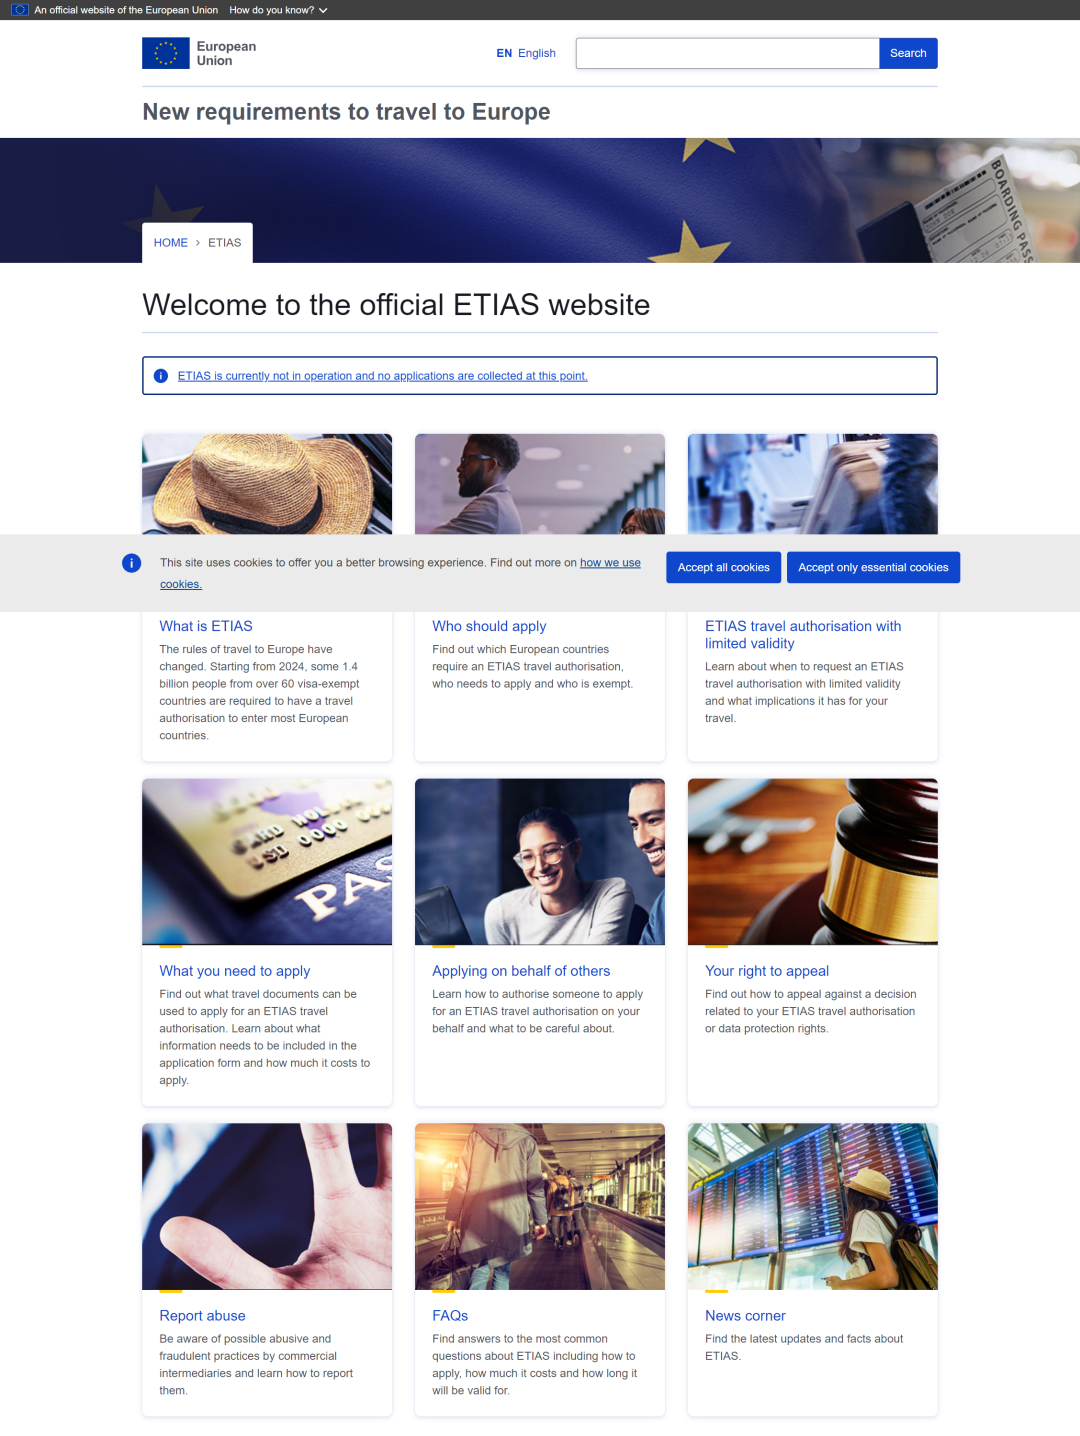 “欧洲旅行信息和授权系统”(ETIAS)